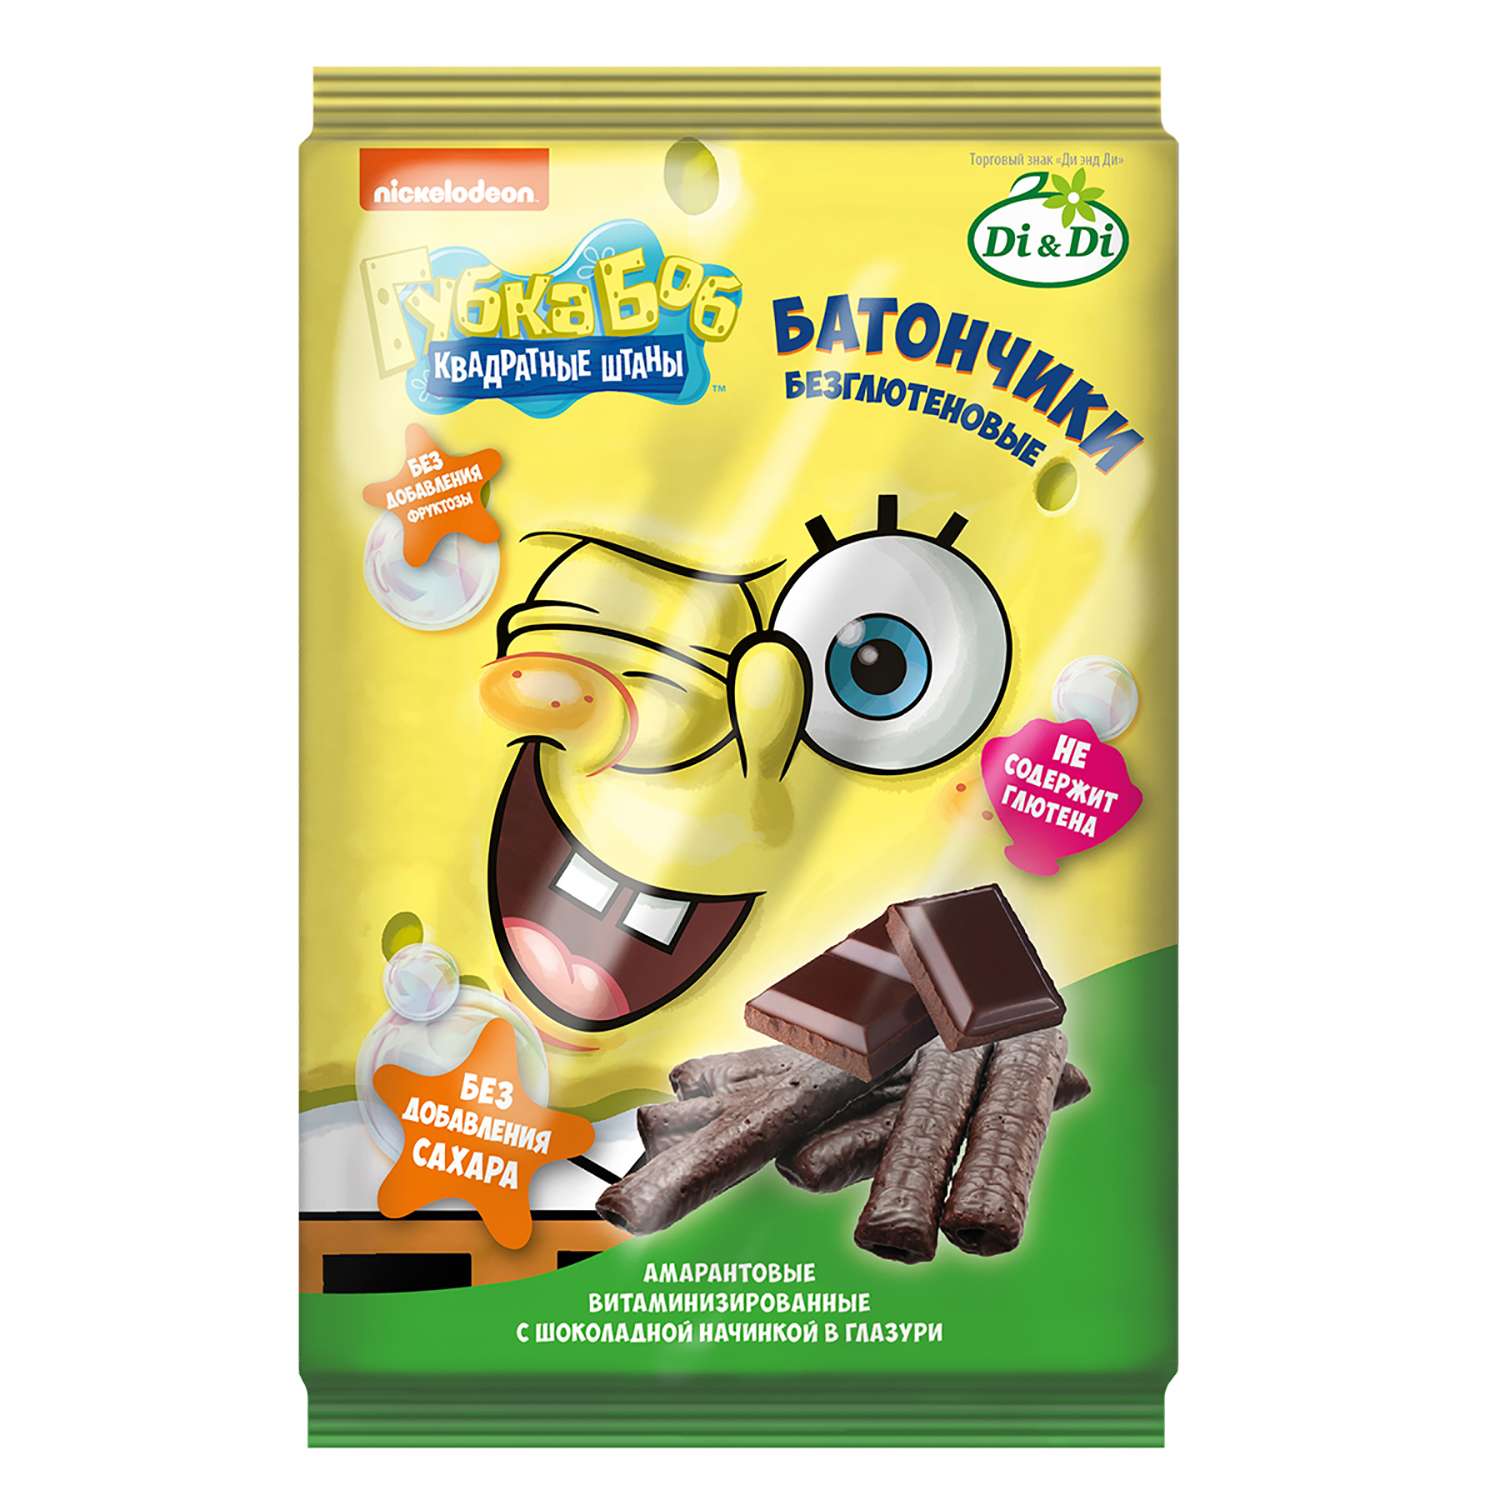 Батончики Sponge Bob амарантовые с шоколадной начинкой глазированные 110г - фото 1